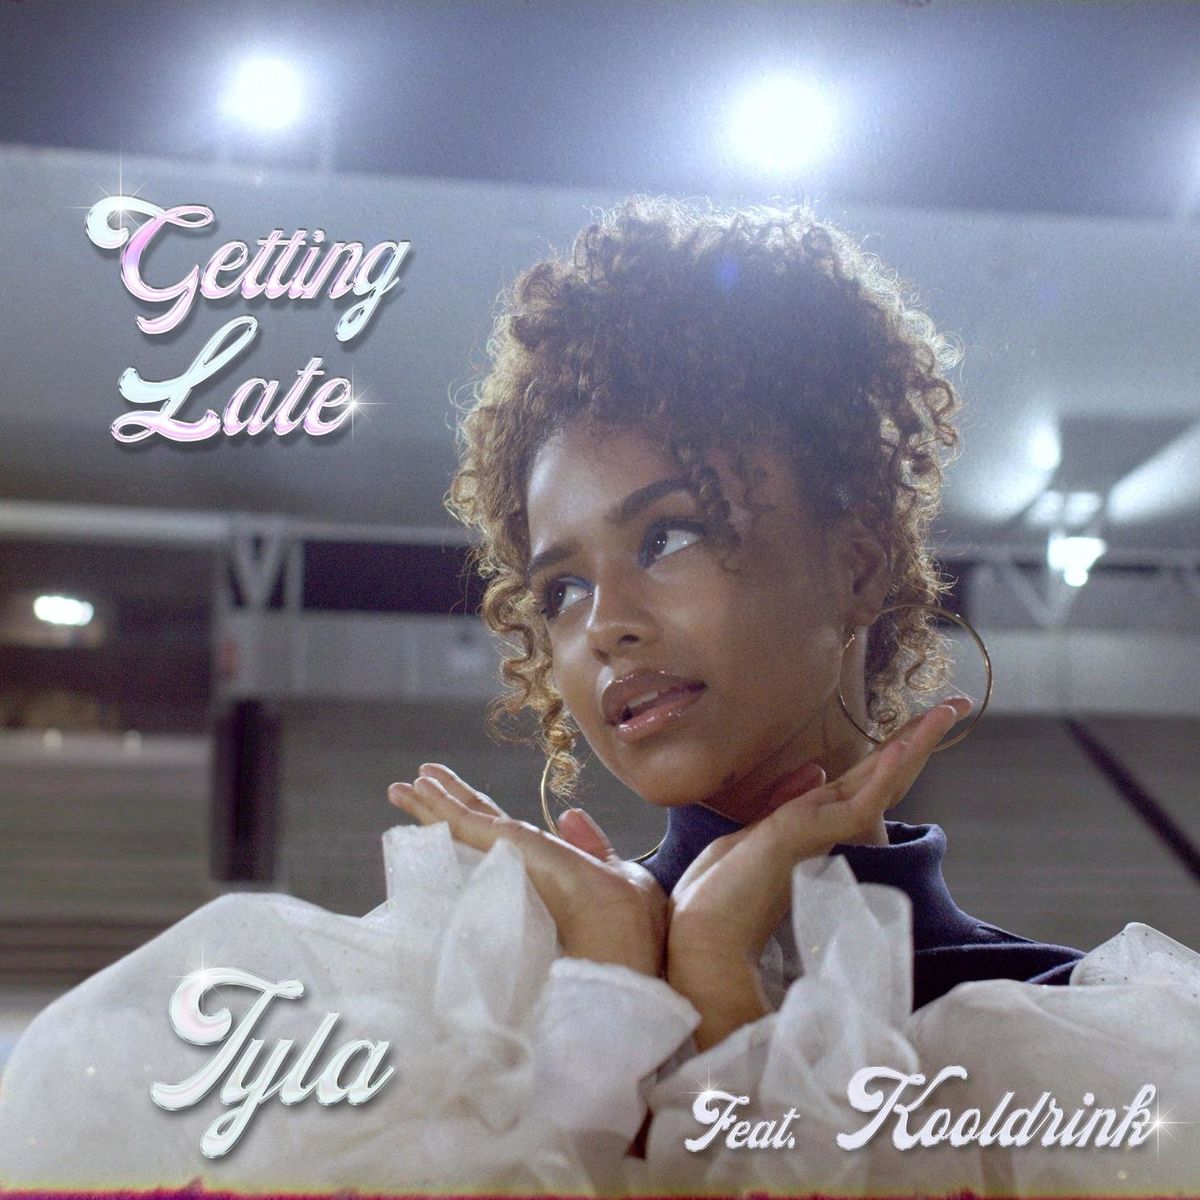 Tyla – Getting Late Feat Kooldrink